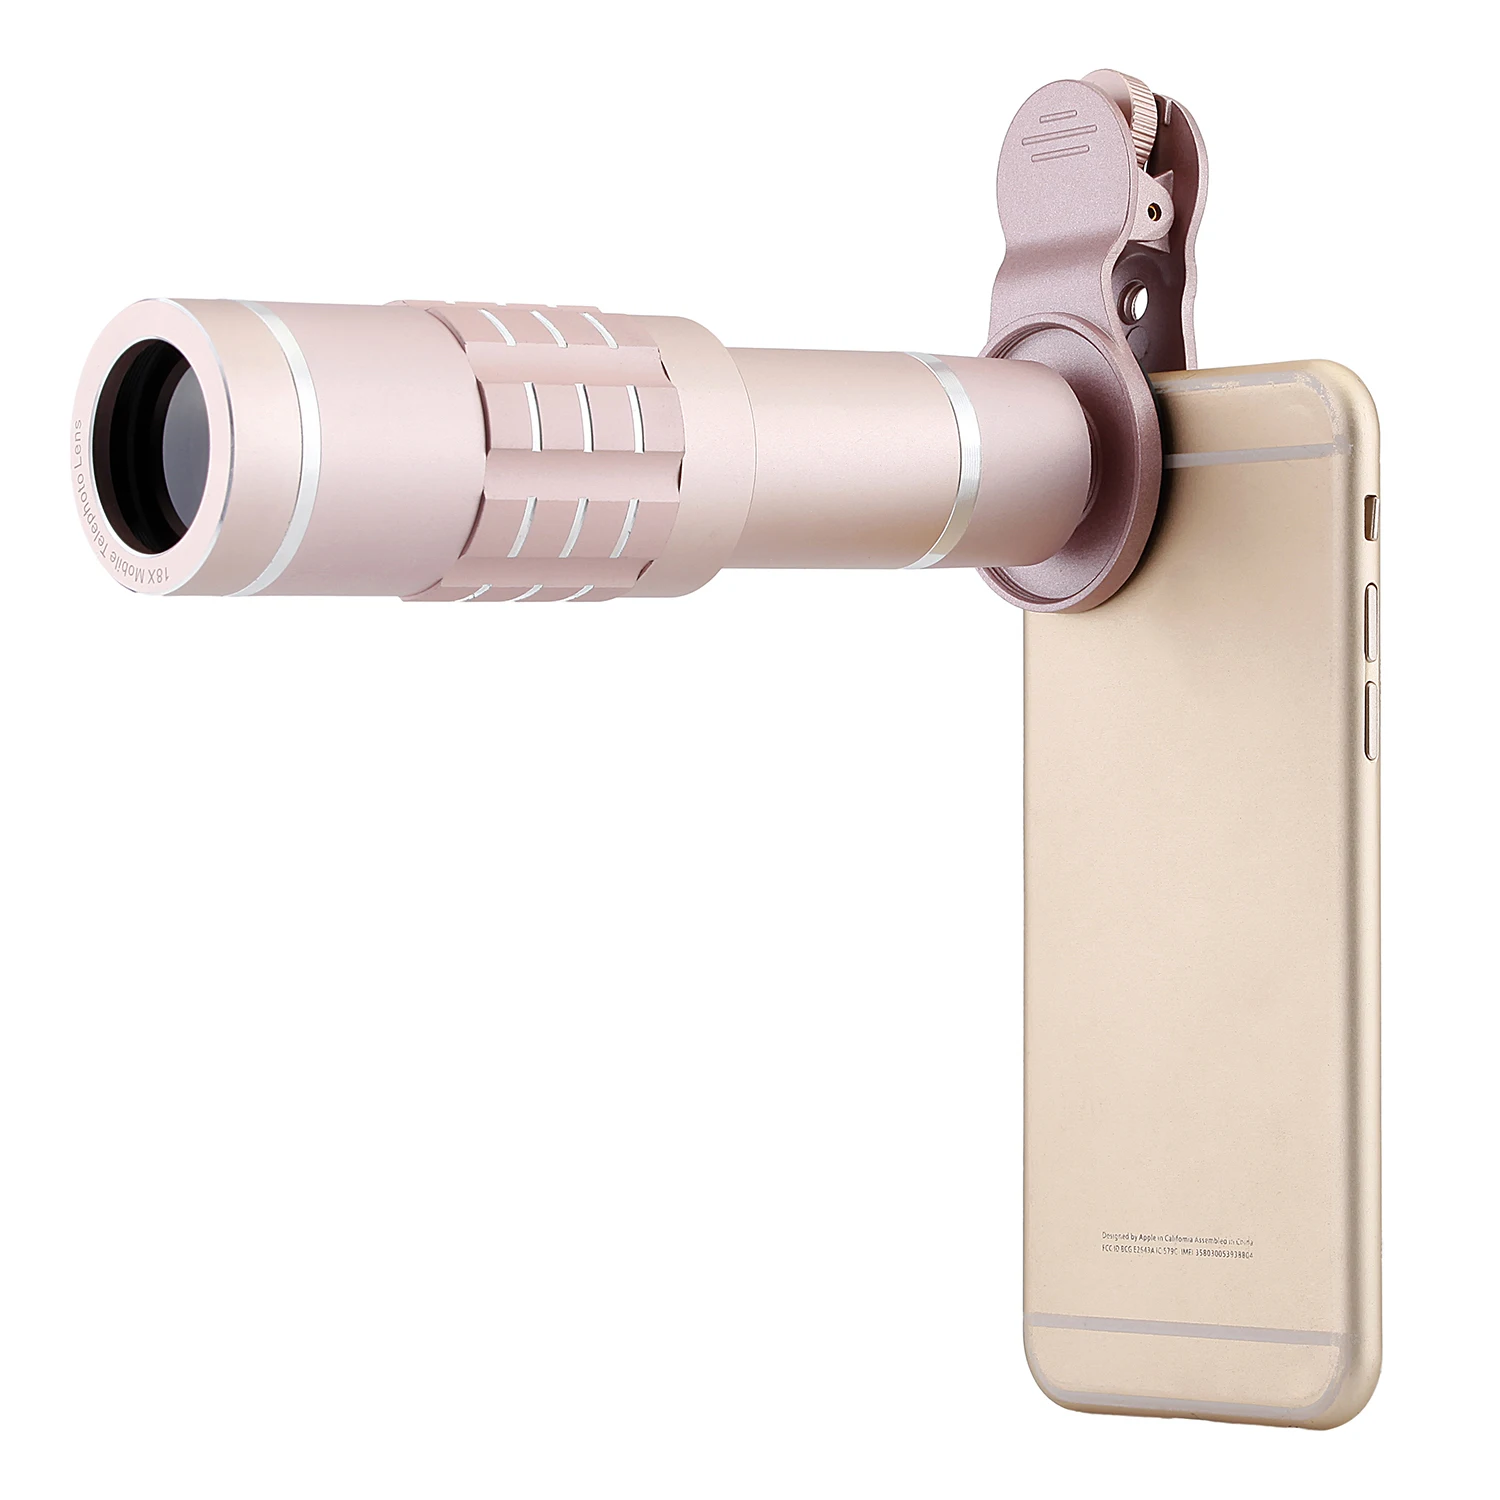 AAAE Универсальный телеобъектив 18x зум Камера телефон телескоп Рыбий глаз объектив 18X оптический зум телеобъектив подходит для Iphone samsung LG